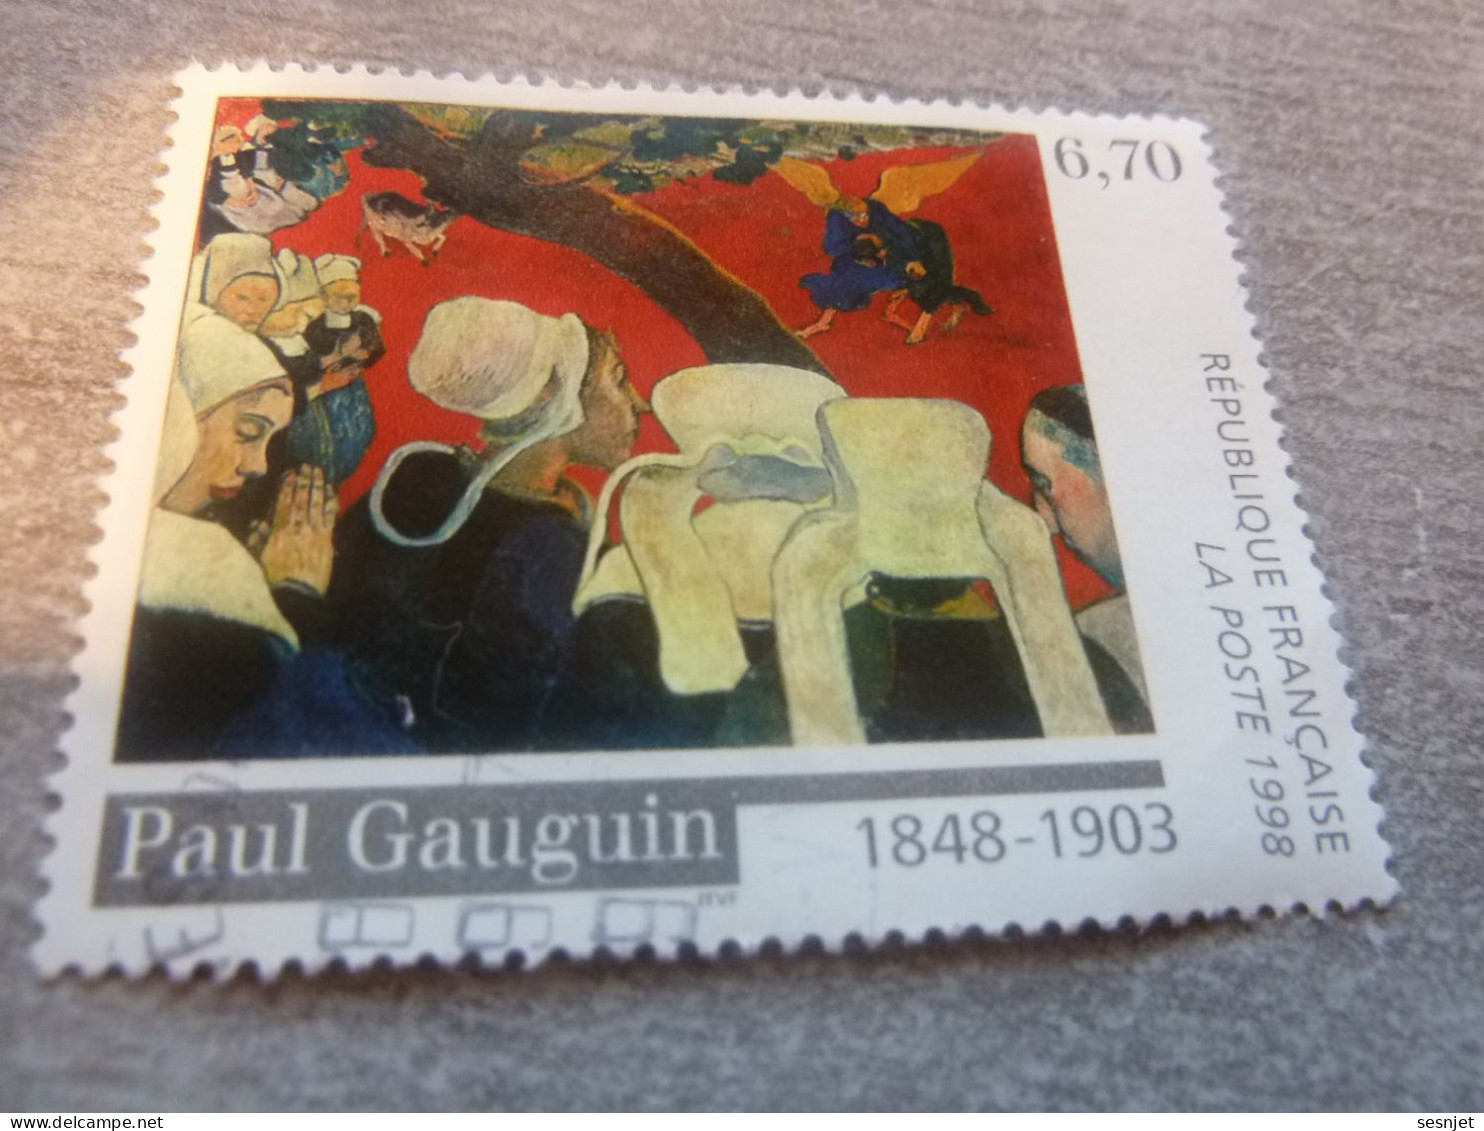 Paul Gauguin (1848-1903) Vision Après Le Sermon - 6f.70 - Yt 3207 - Multicolore - Oblitéré - Année 1998 - - Gebraucht